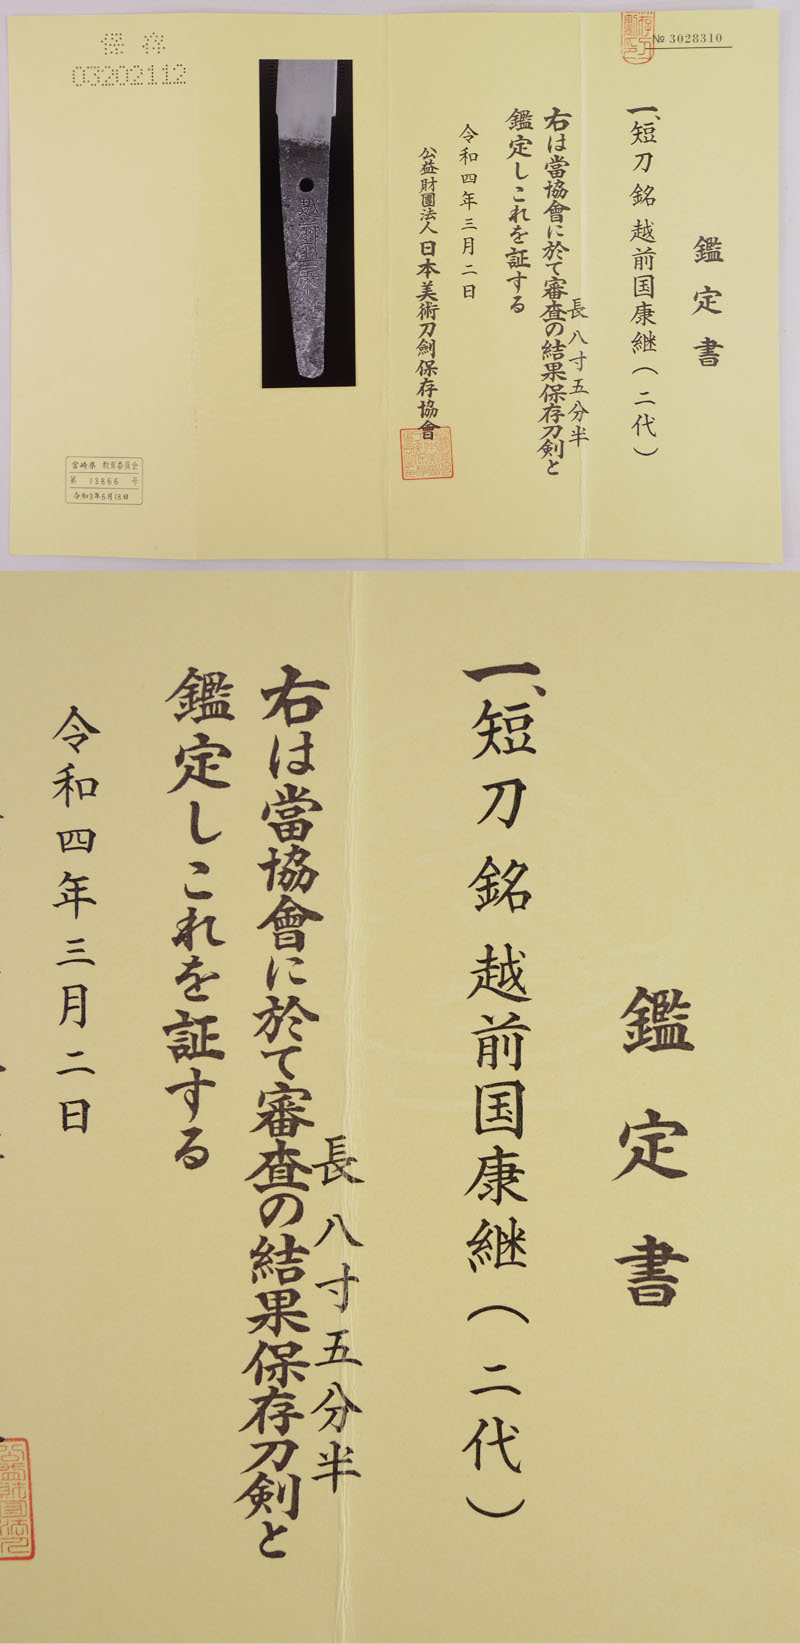 短刀　越前国康継(二代康継) (新刀最上作) (良業物) Picture of Certificate